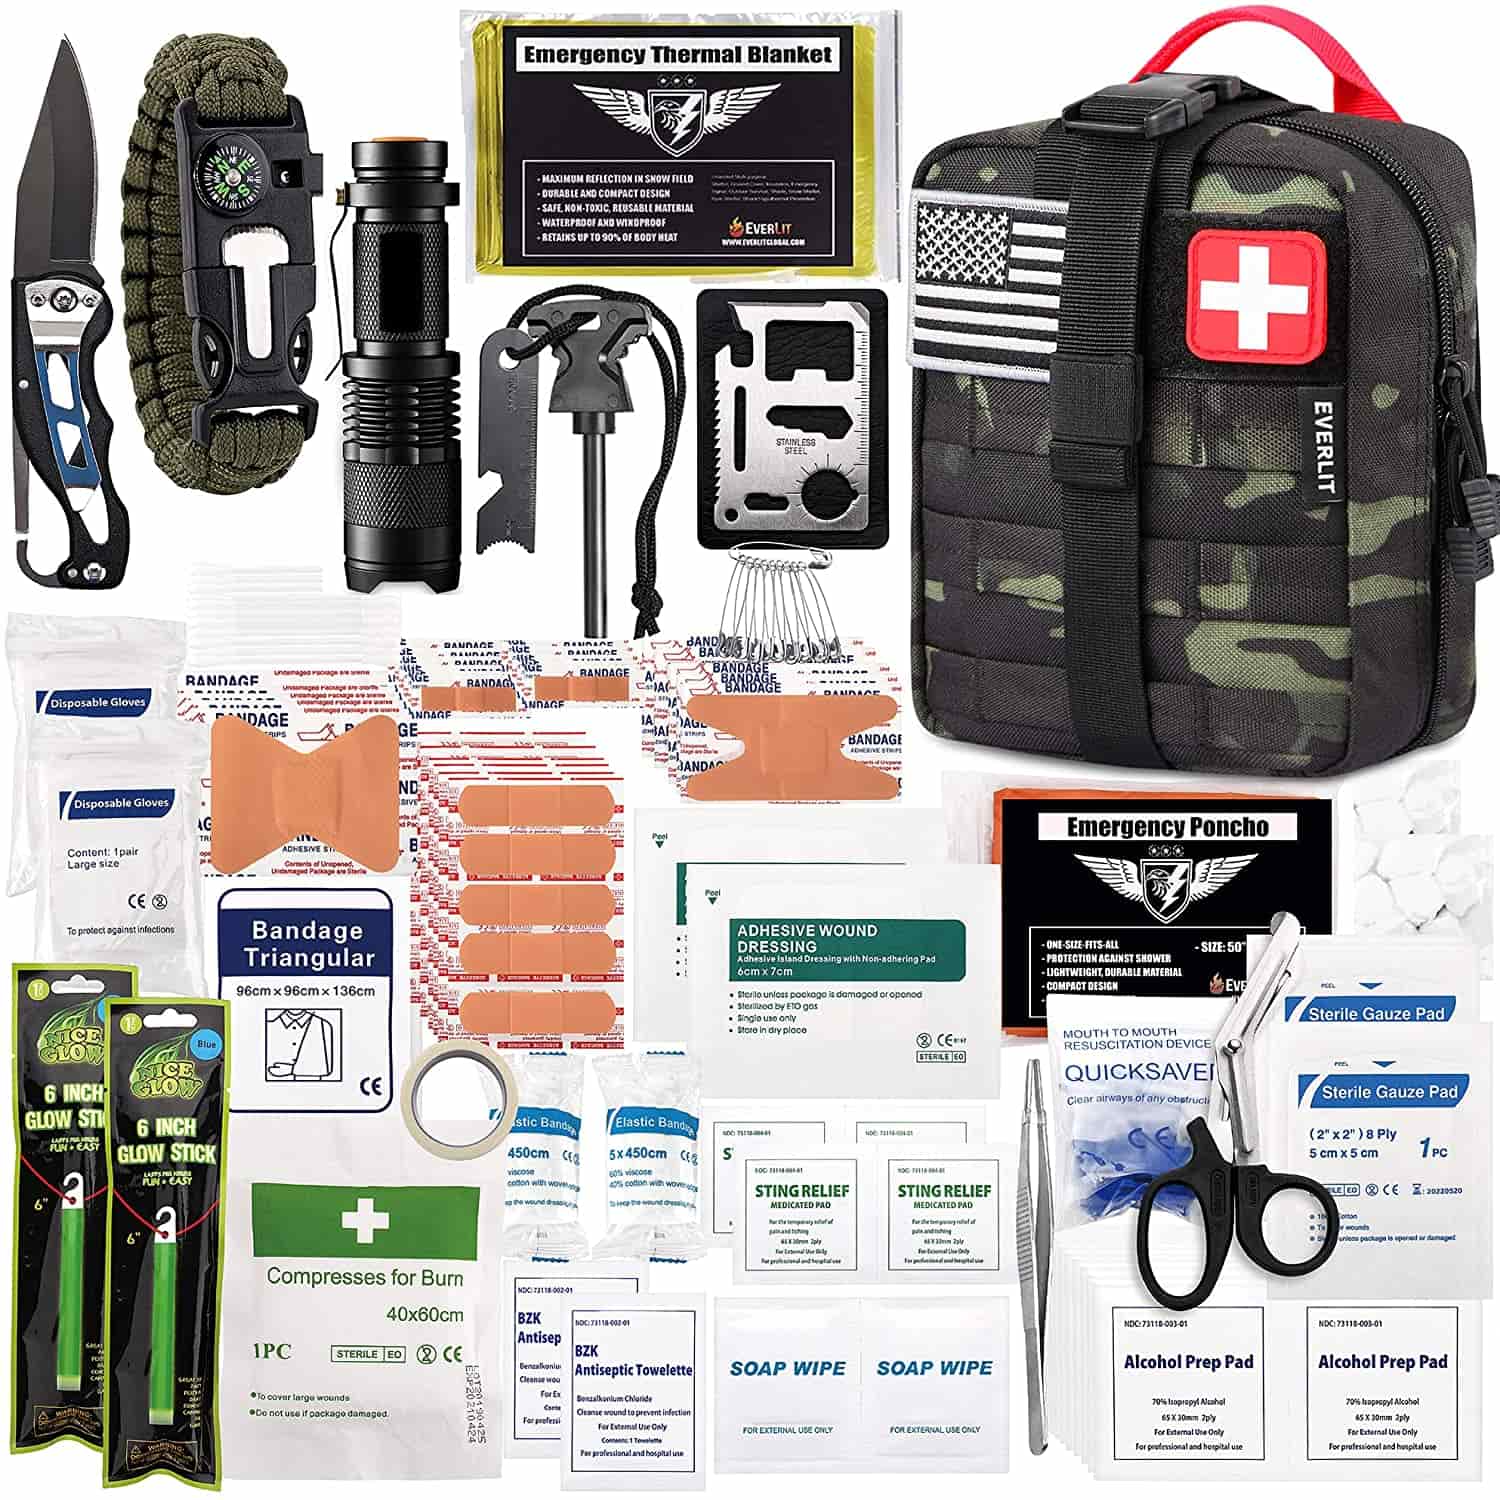 Ang Black Camo Survival First Aid Kit ay Naglalaman ng 250 pirasong First Aid Kit